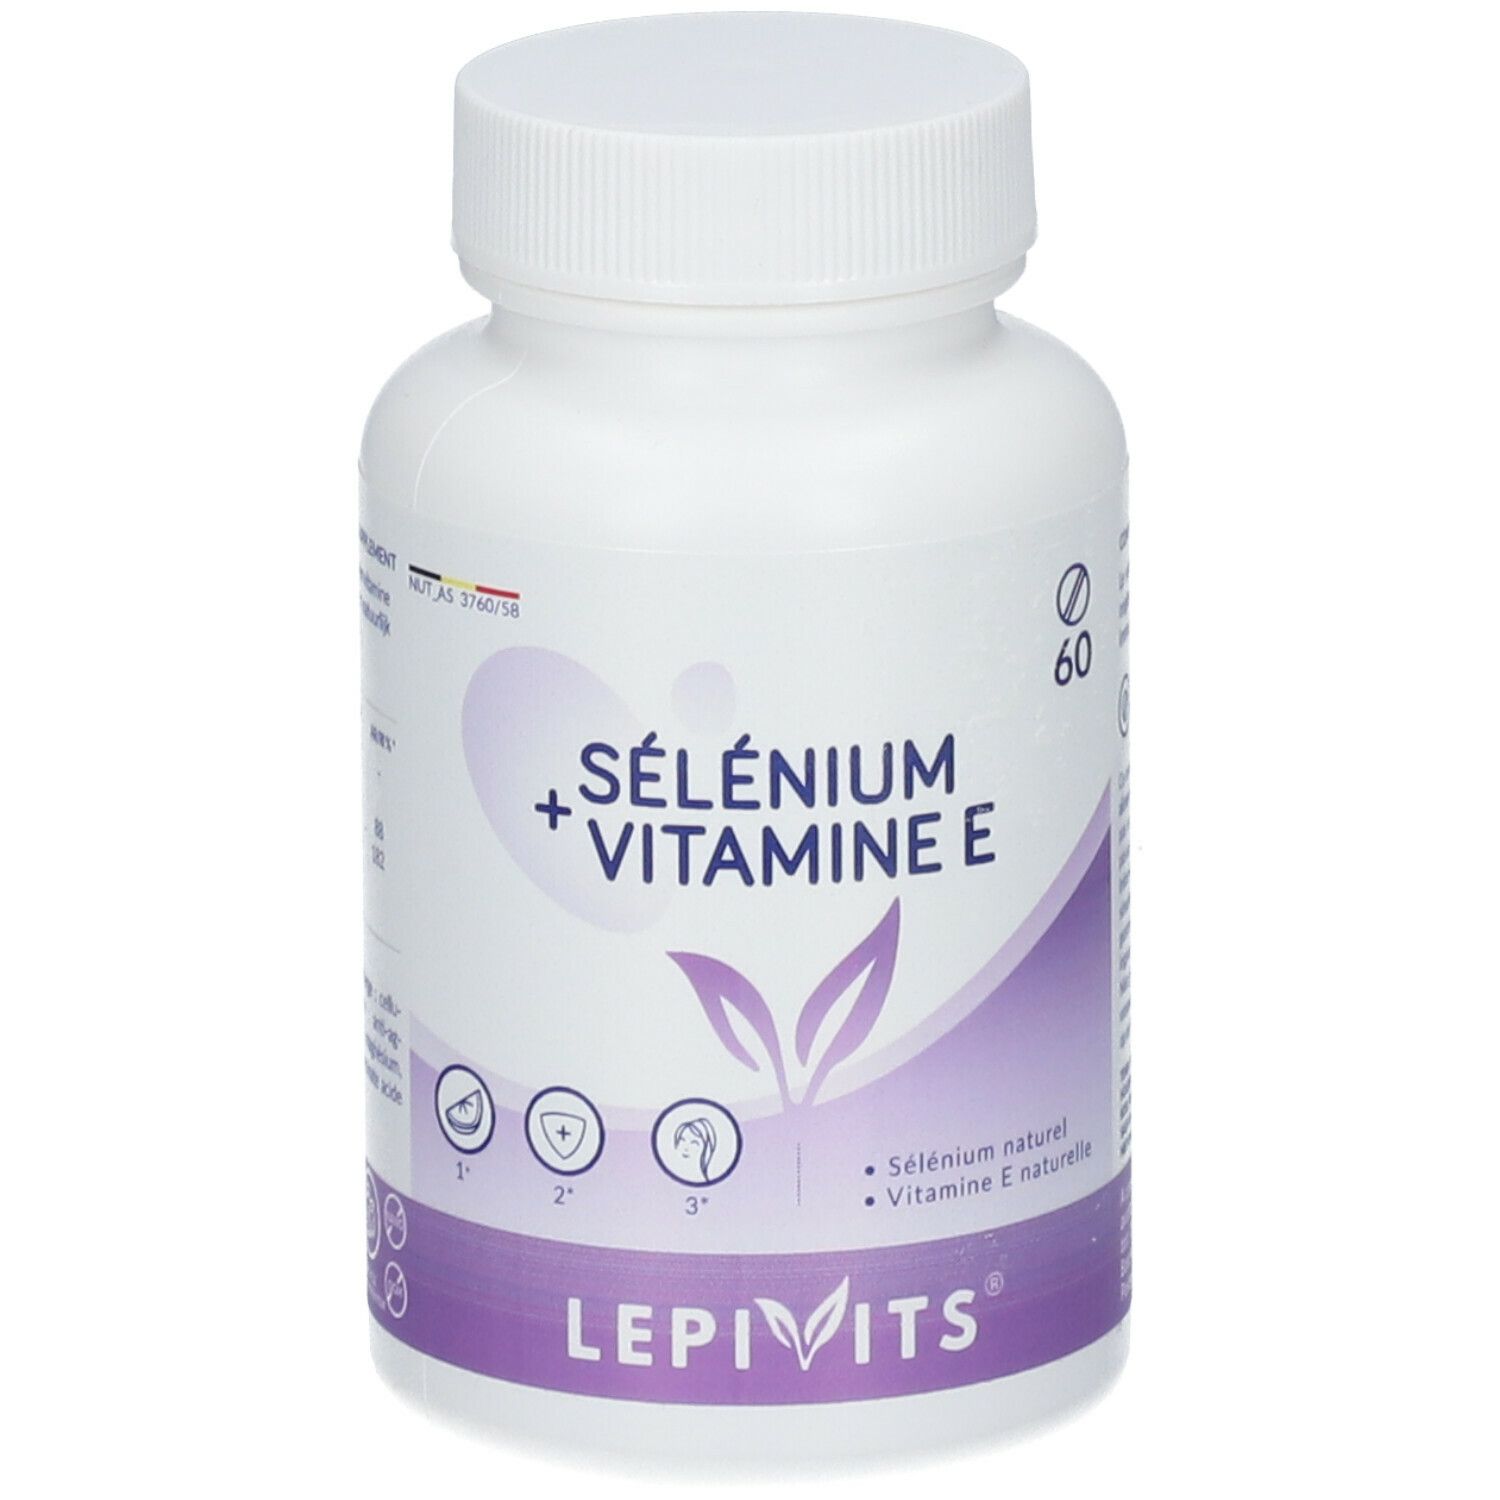 LEPIVITIS® Selenium + Vitamina E